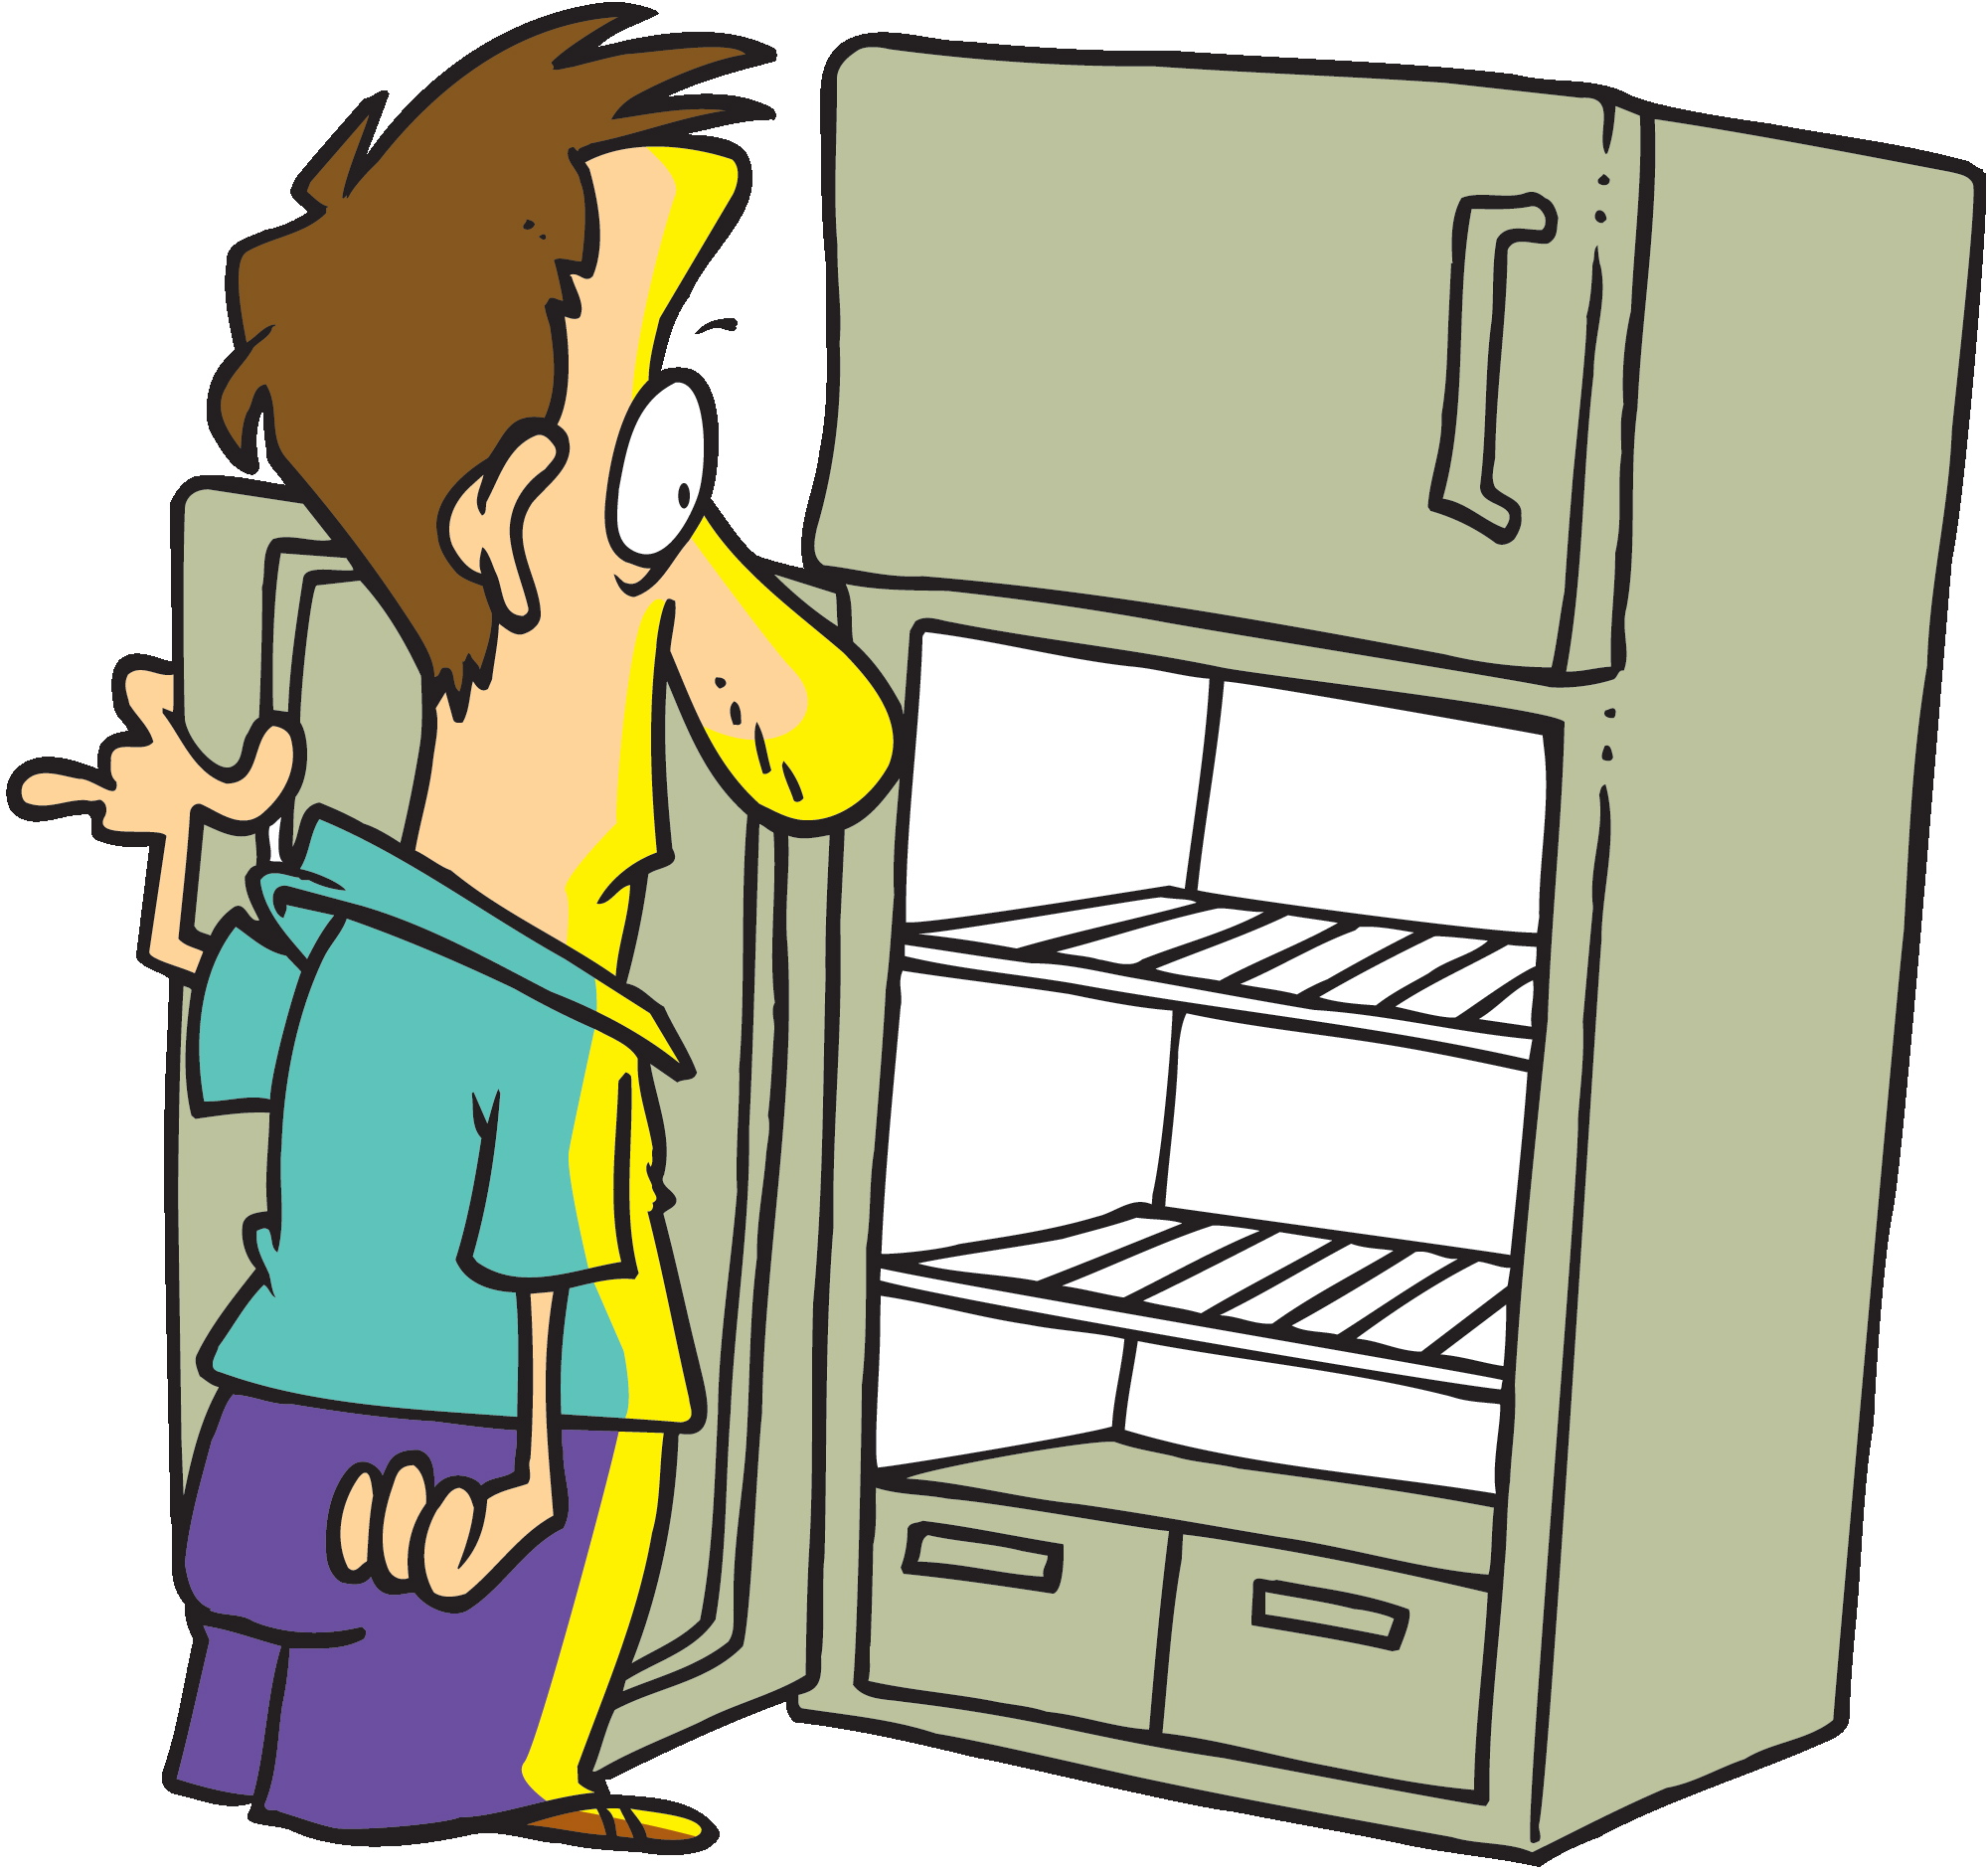 Go into detail. Холодильник. Пустой холодильник. Холодильник открытый пустой. Холодильник иллюстрация.